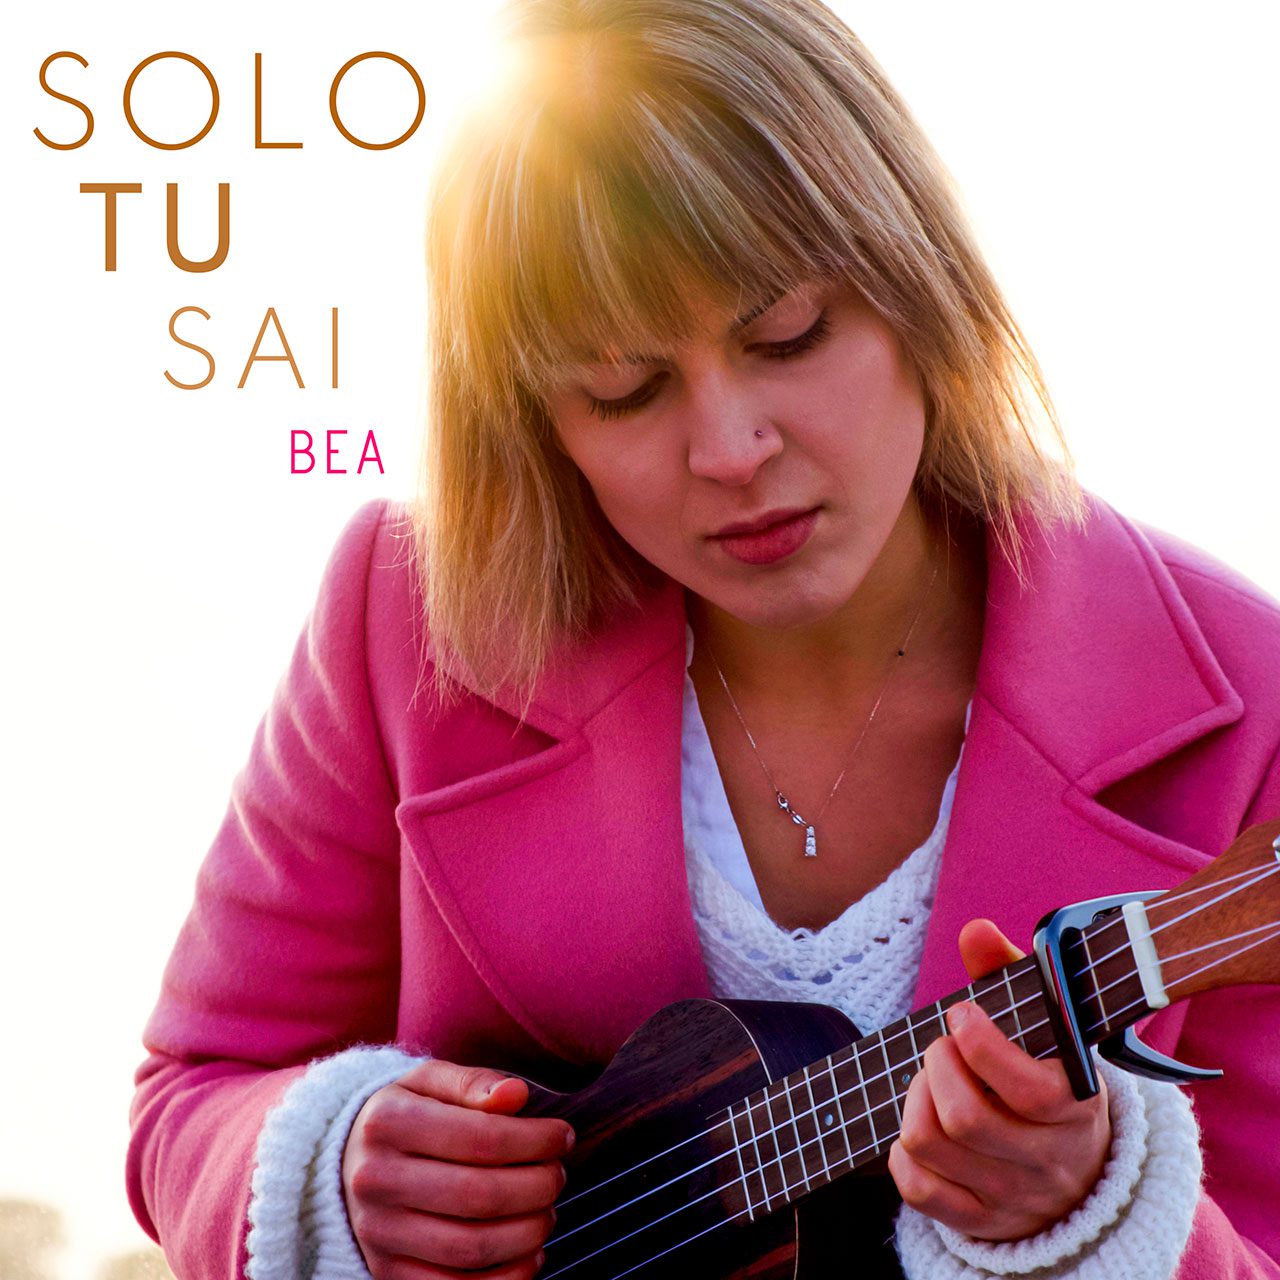 Bea De Beni 'Solo tu sai' cover album